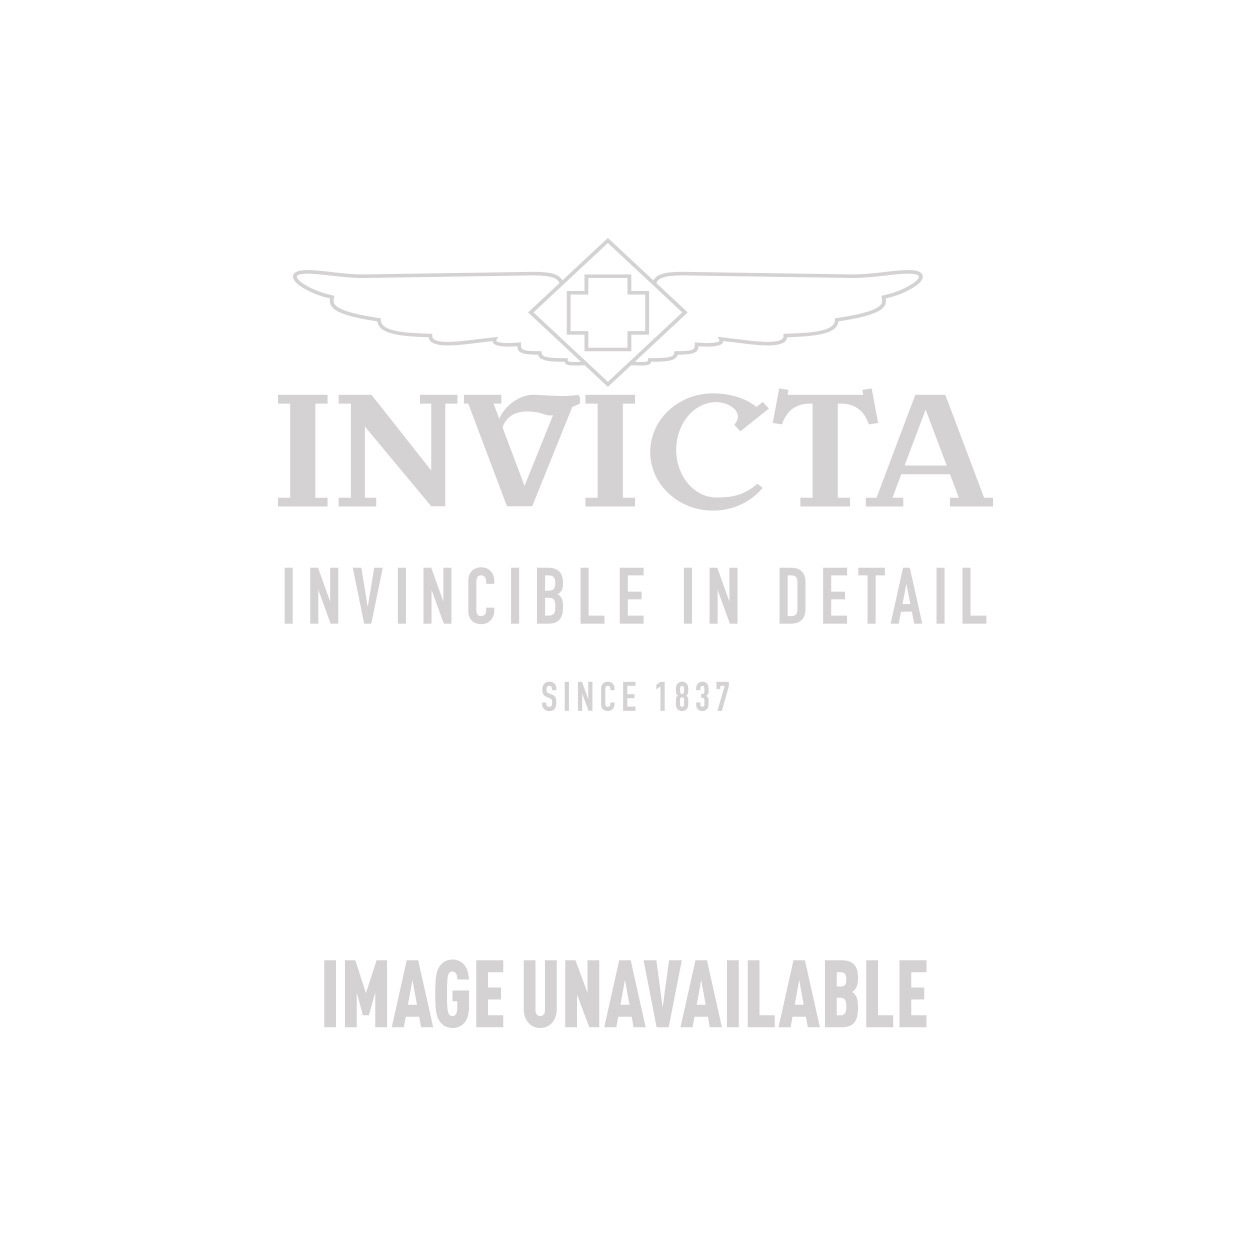 Pro Diver (Mod: 8926OB) | Invicta Watches